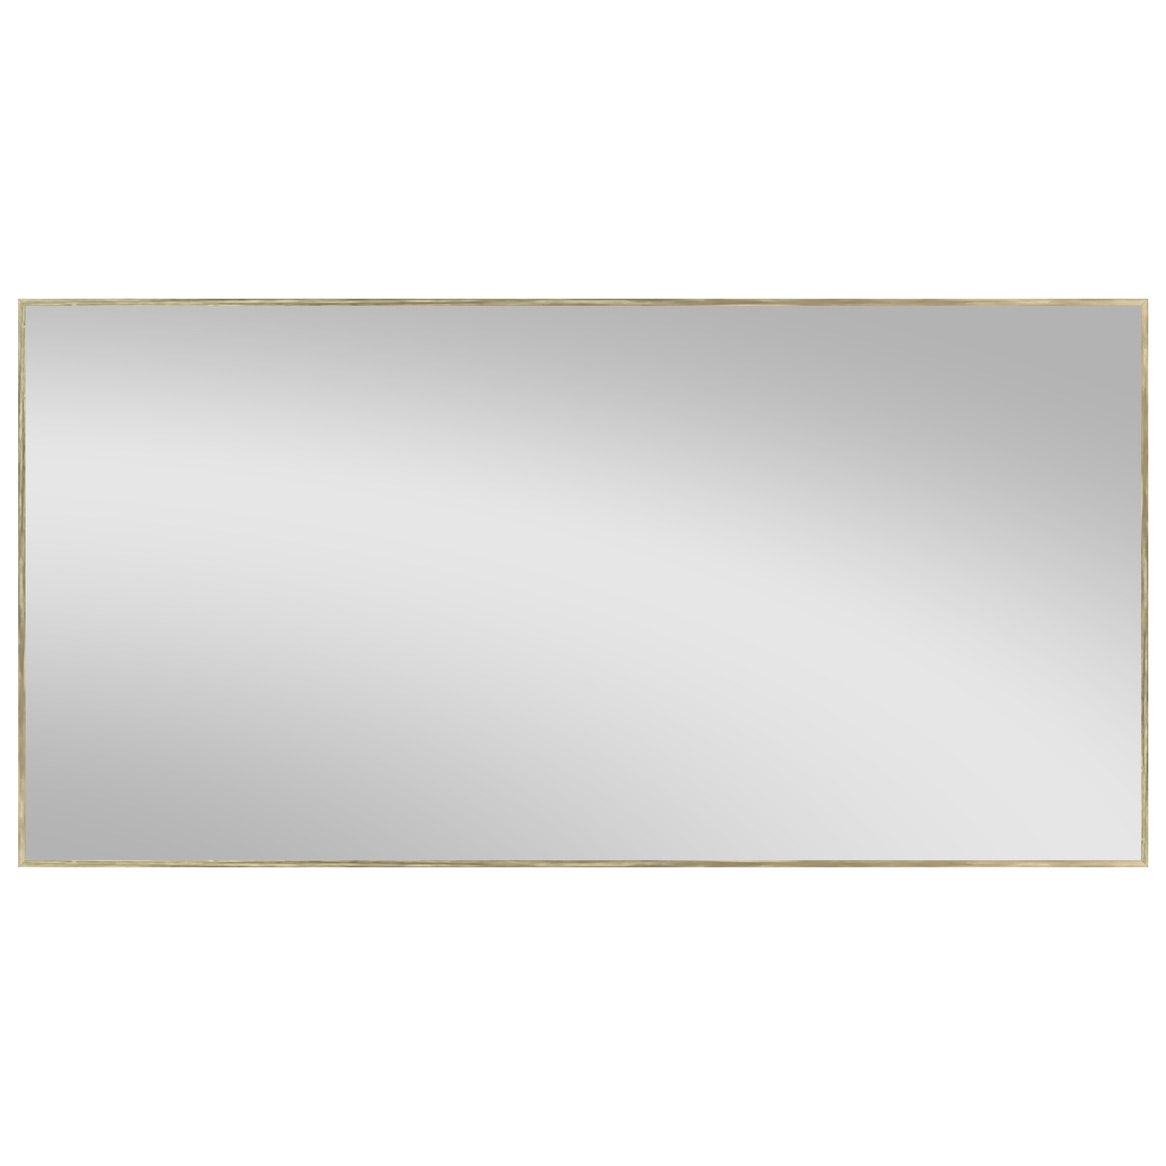 Зеркала алюминиевые Aur brash 70x140cm Ortakci Турция